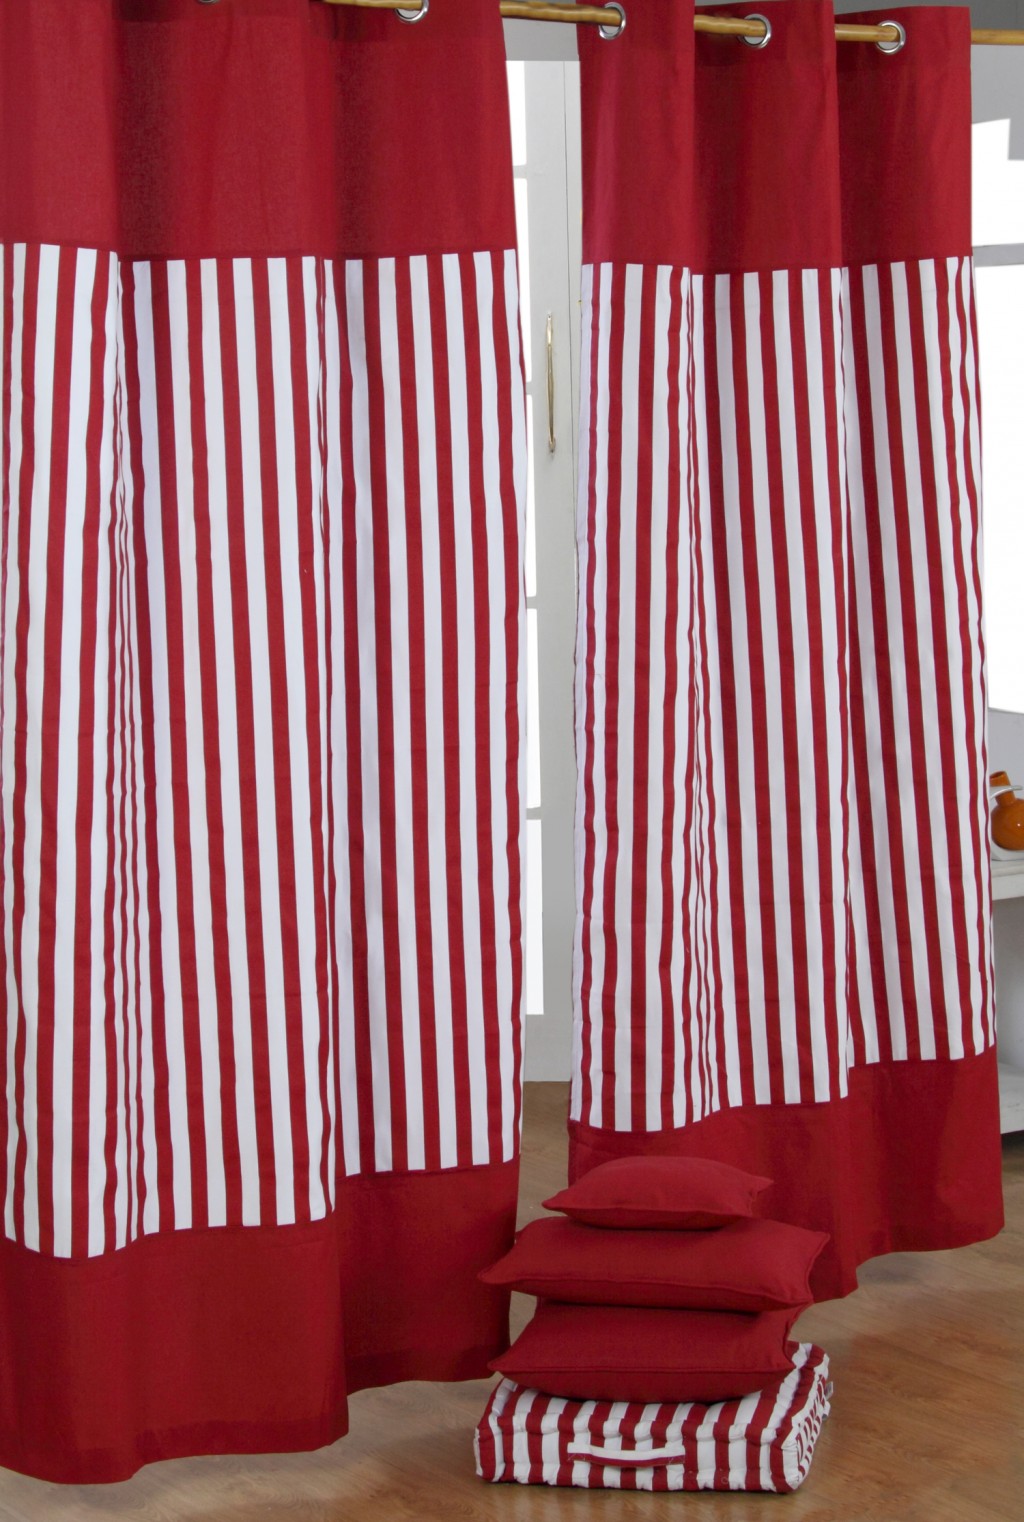 Red Striped Curtains in Furniture Idea